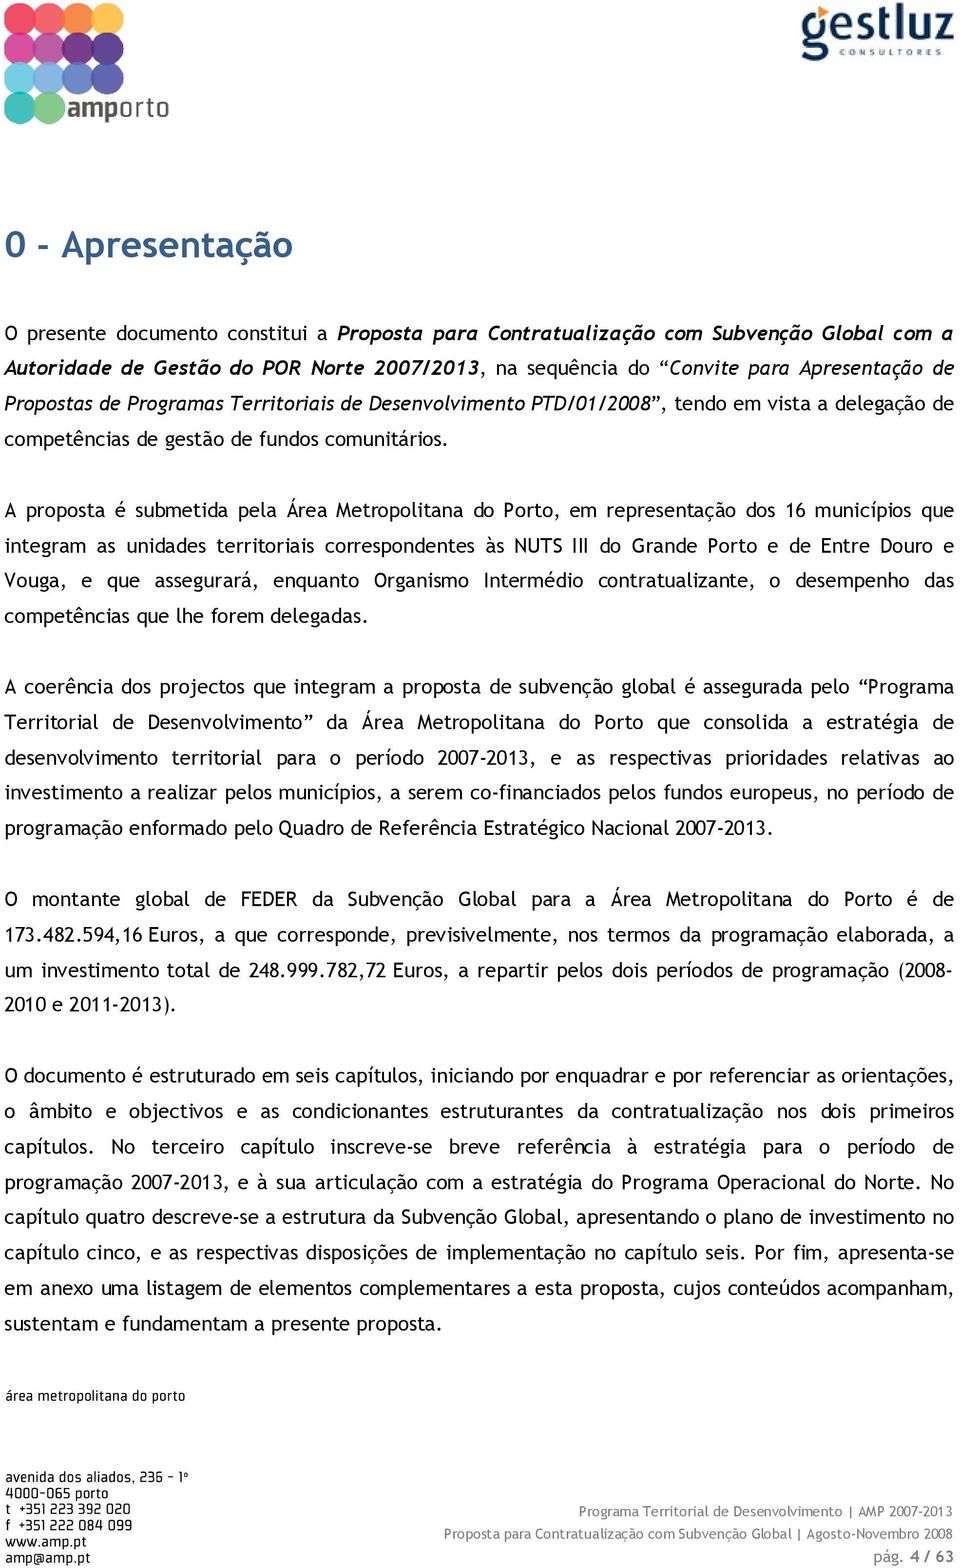 A proposta é submetida pela Área Metropolitana do Porto, em representação dos 16 municípios que integram as unidades territoriais correspondentes às NUTS III do Grande Porto e de Entre Douro e Vouga,